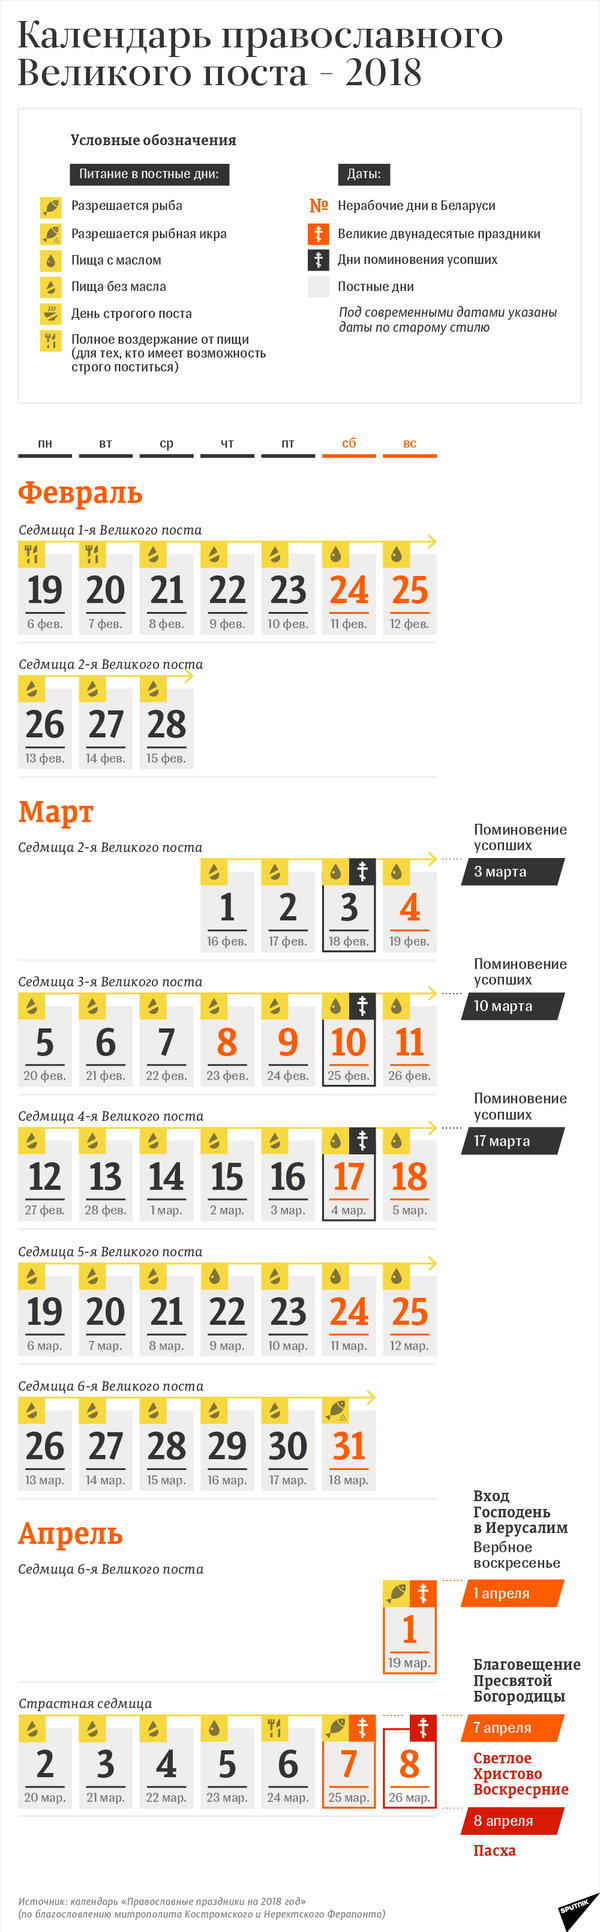 Календарь православного Великого поста 2018 – инфографика на sputnik.by - Sputnik Беларусь